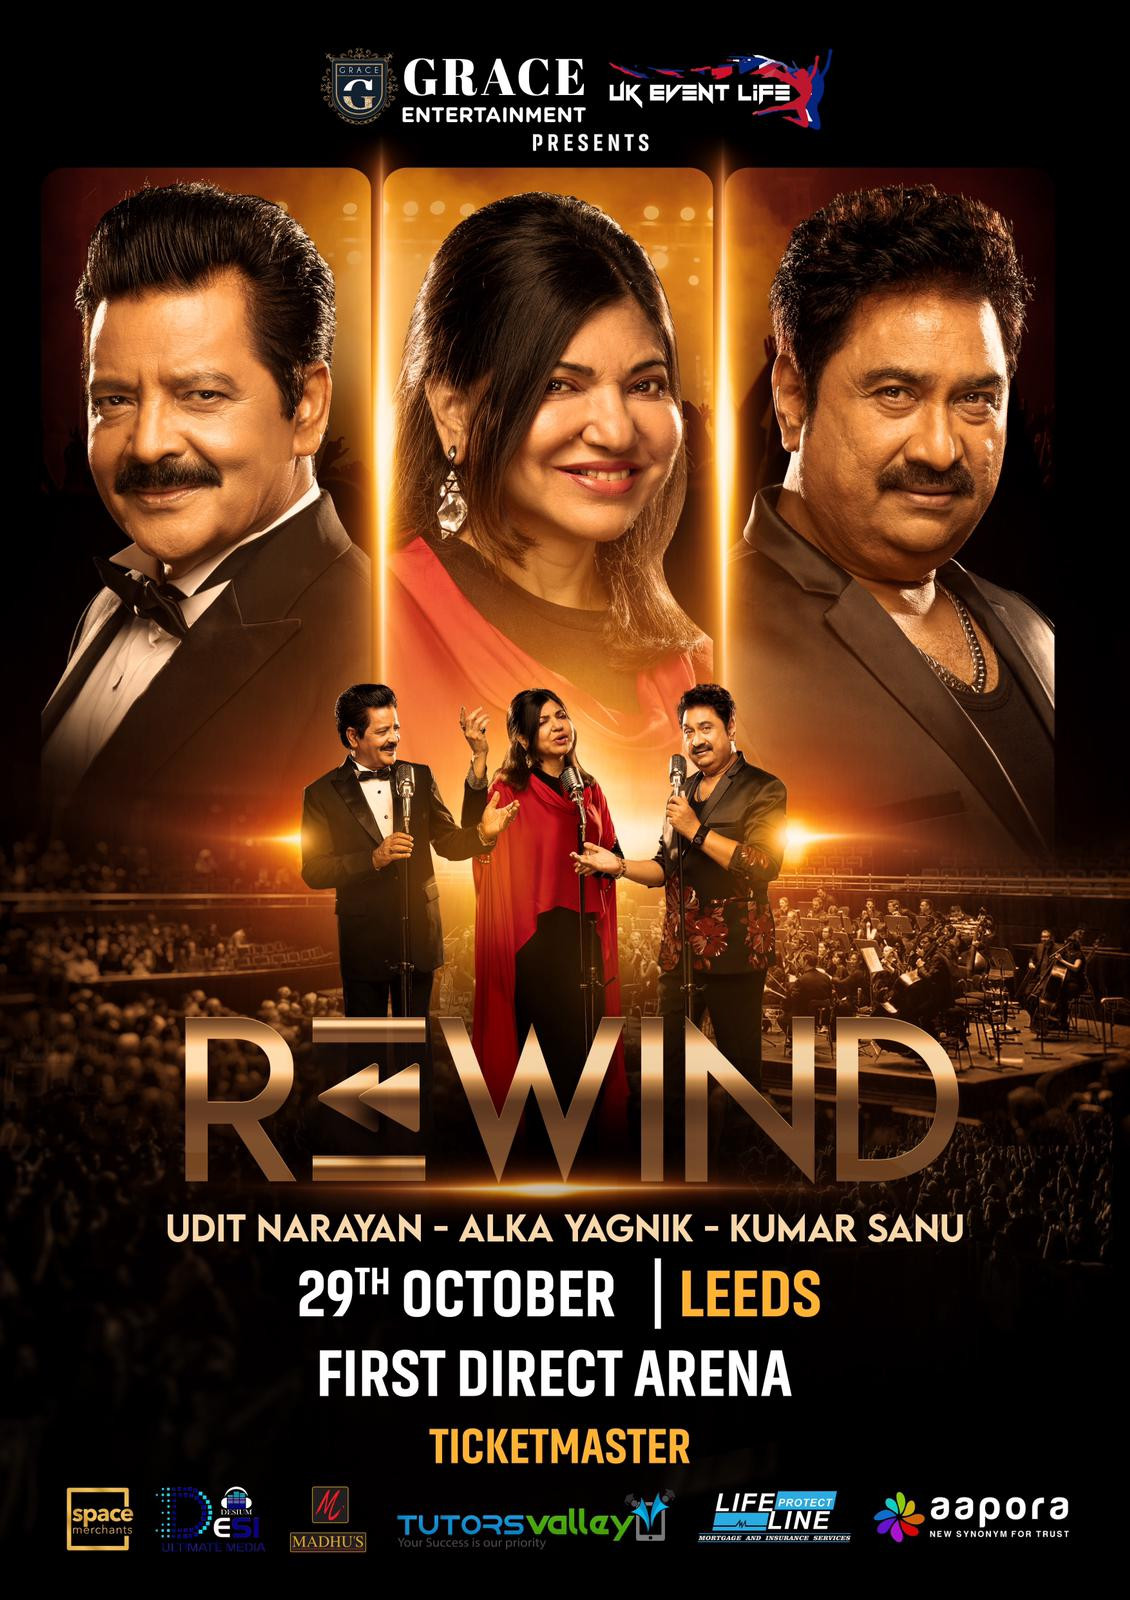 The Rewind Tour - Udit Narayan, Alka Yagnik, Kumar Sanu